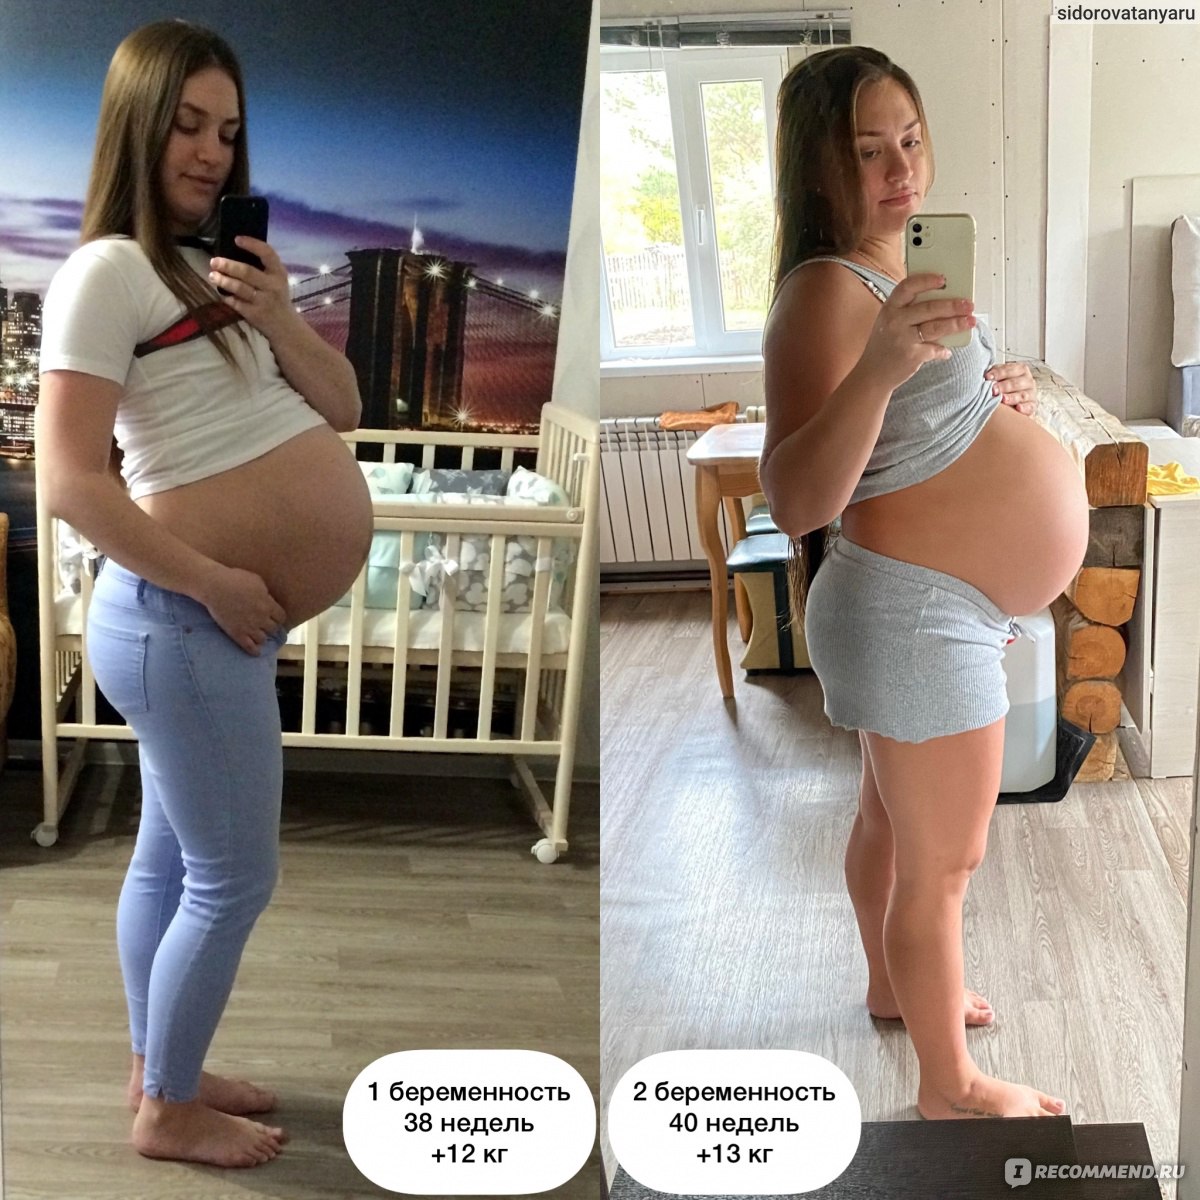 40 неделя беременности — на финишной прямой